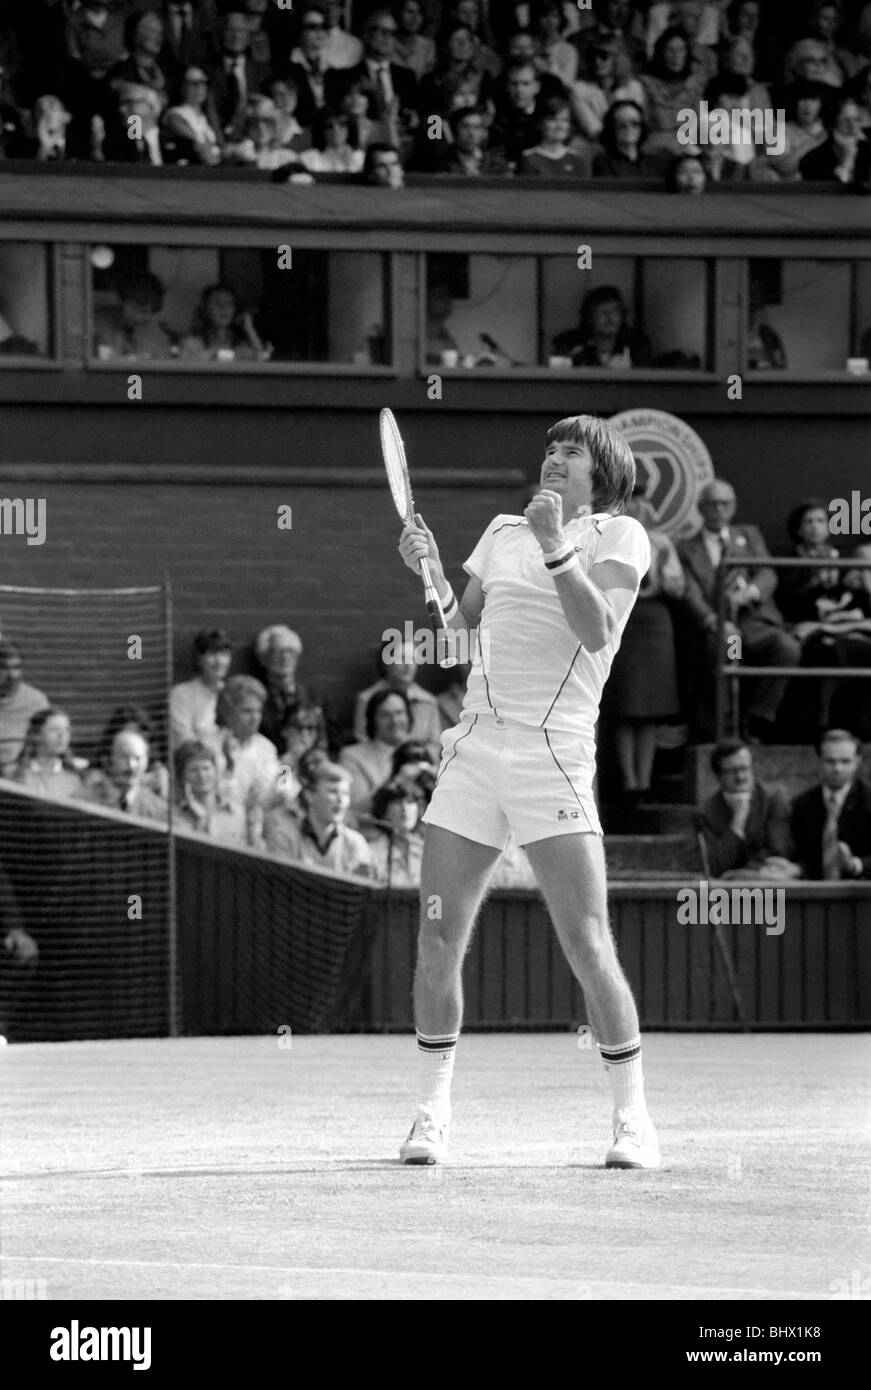 Wimbledon ottavo giorno: Frawley su Mayotte: Jimmy Connors in azione oggi contro Amritraj. Giugno 1981 81-3717-007 Foto Stock